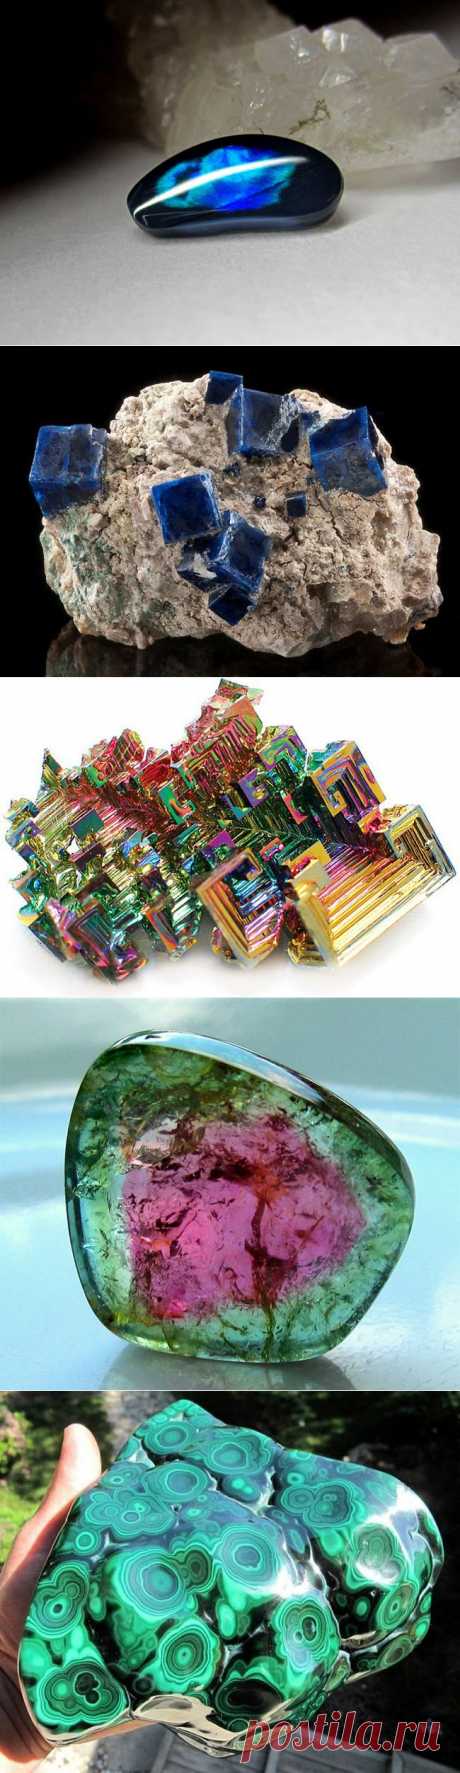 Таинственная красота минералов — Наука и жизнь